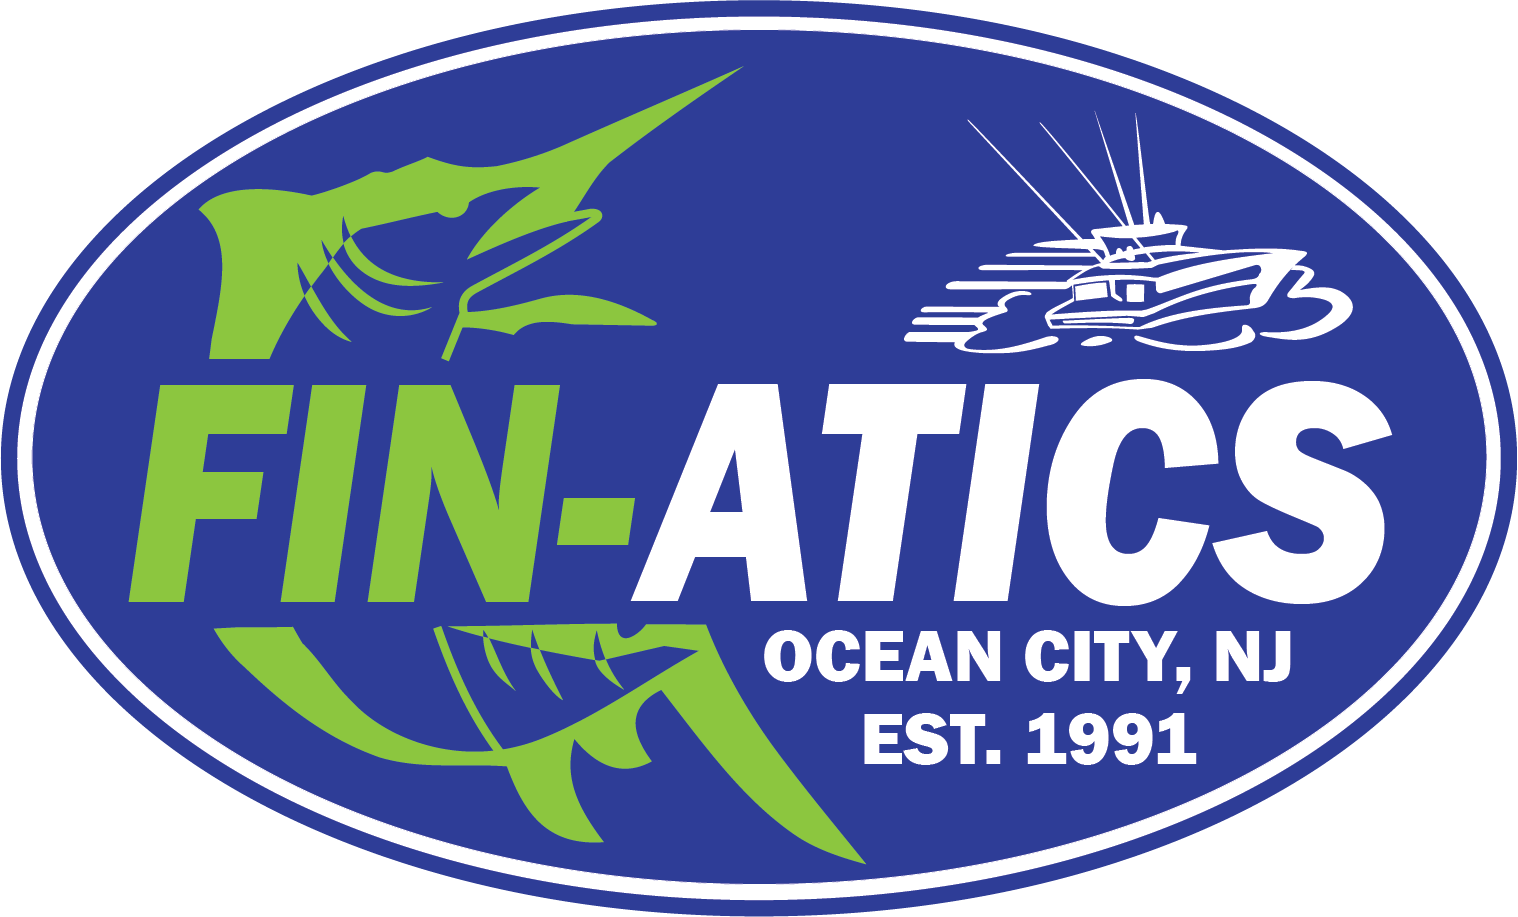 Fin-atics Marine Supply Ltd. Inc.